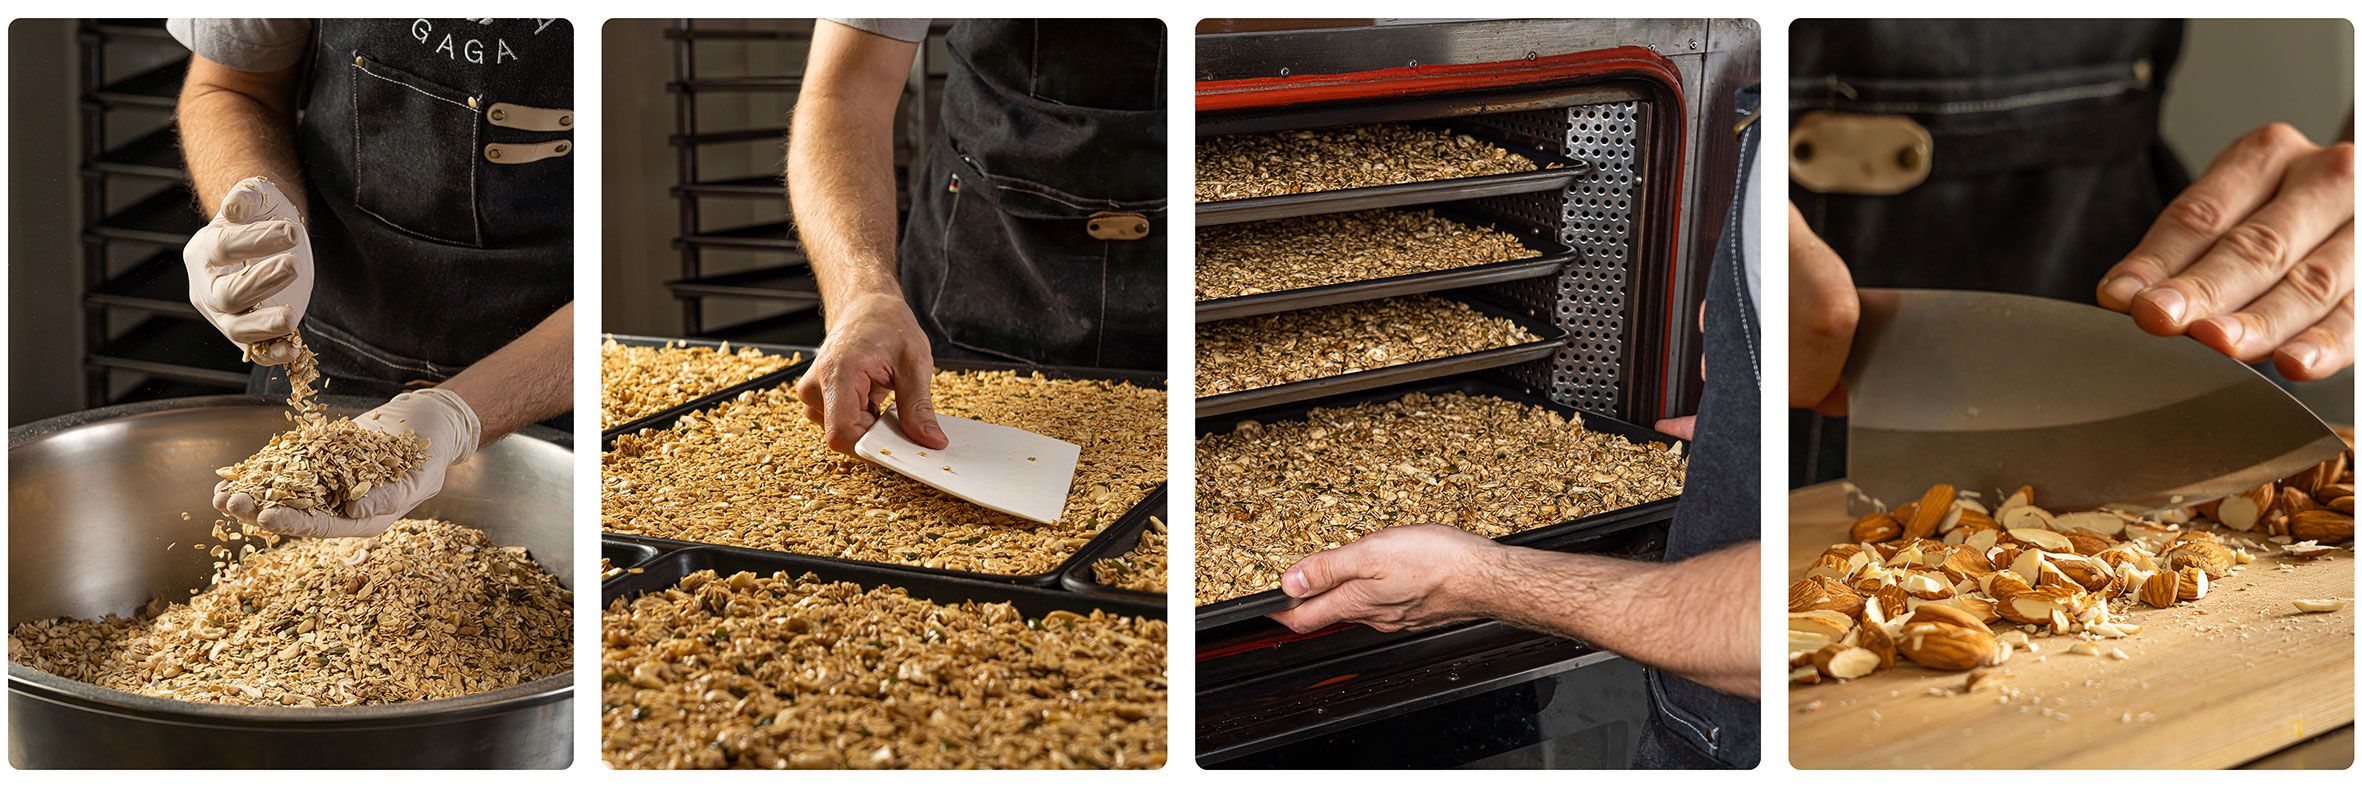 展示不同製作穀卡卡堅果燕麥脆片的過程